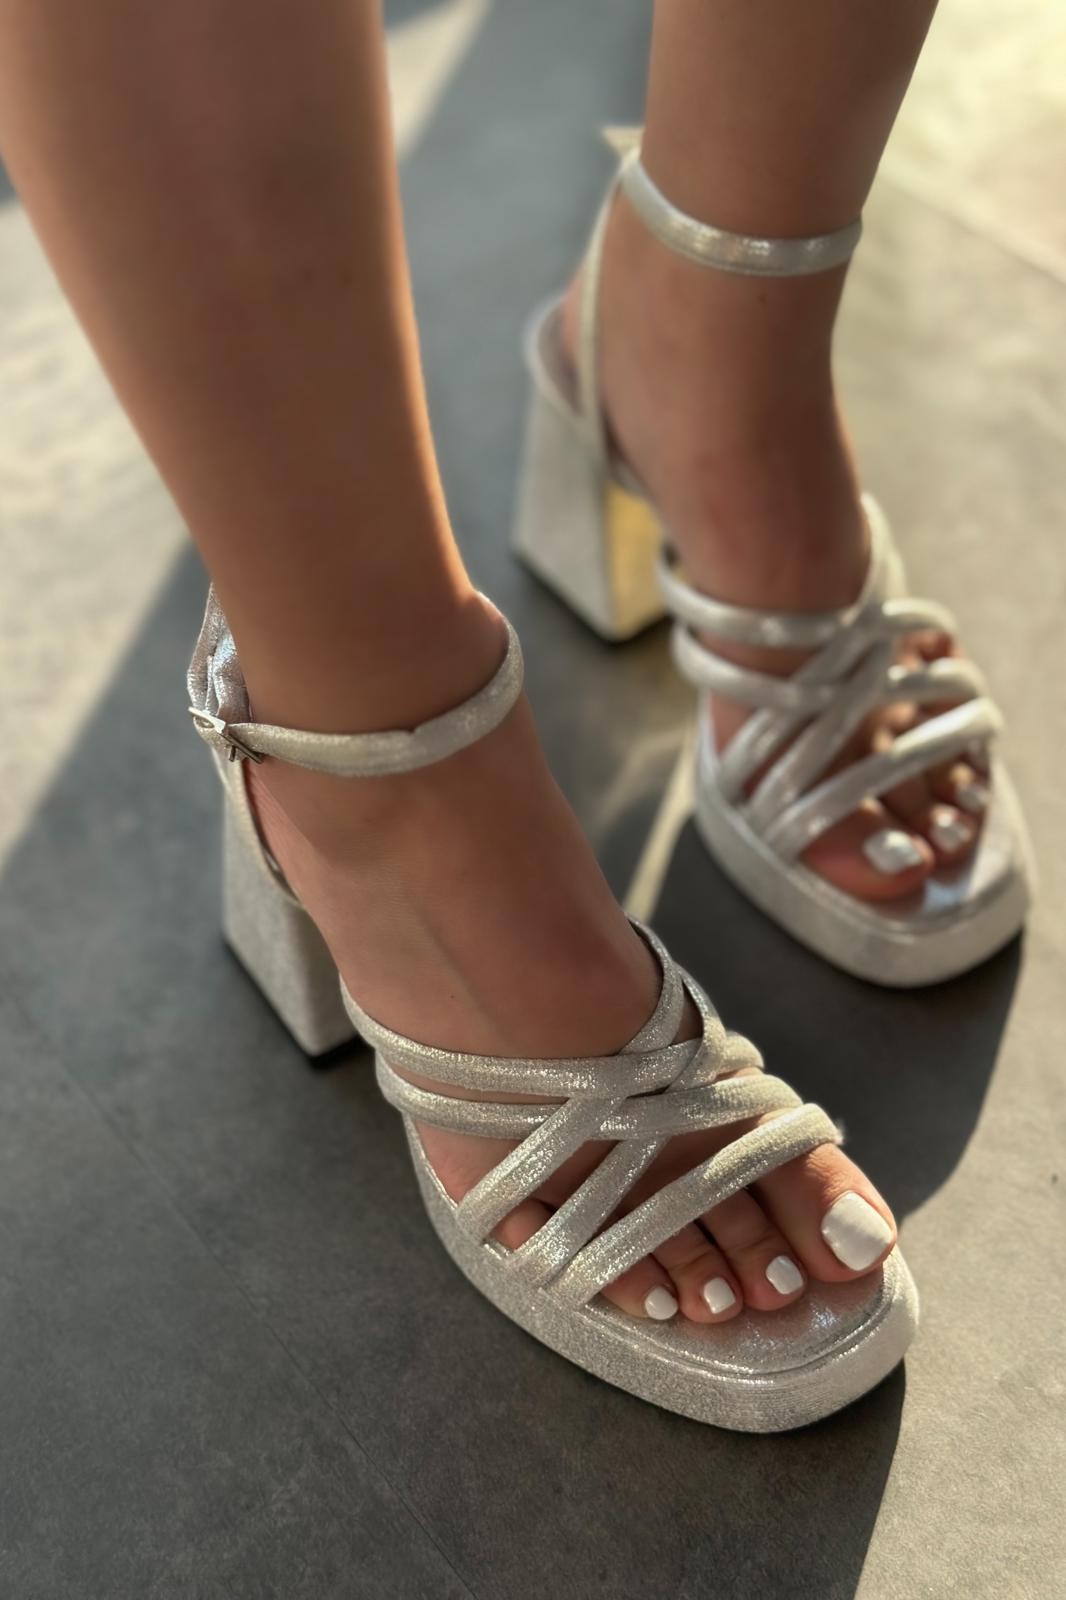 Olida Parlak Deri Kadın Platform Topuklu Ayakkabı Gümüş